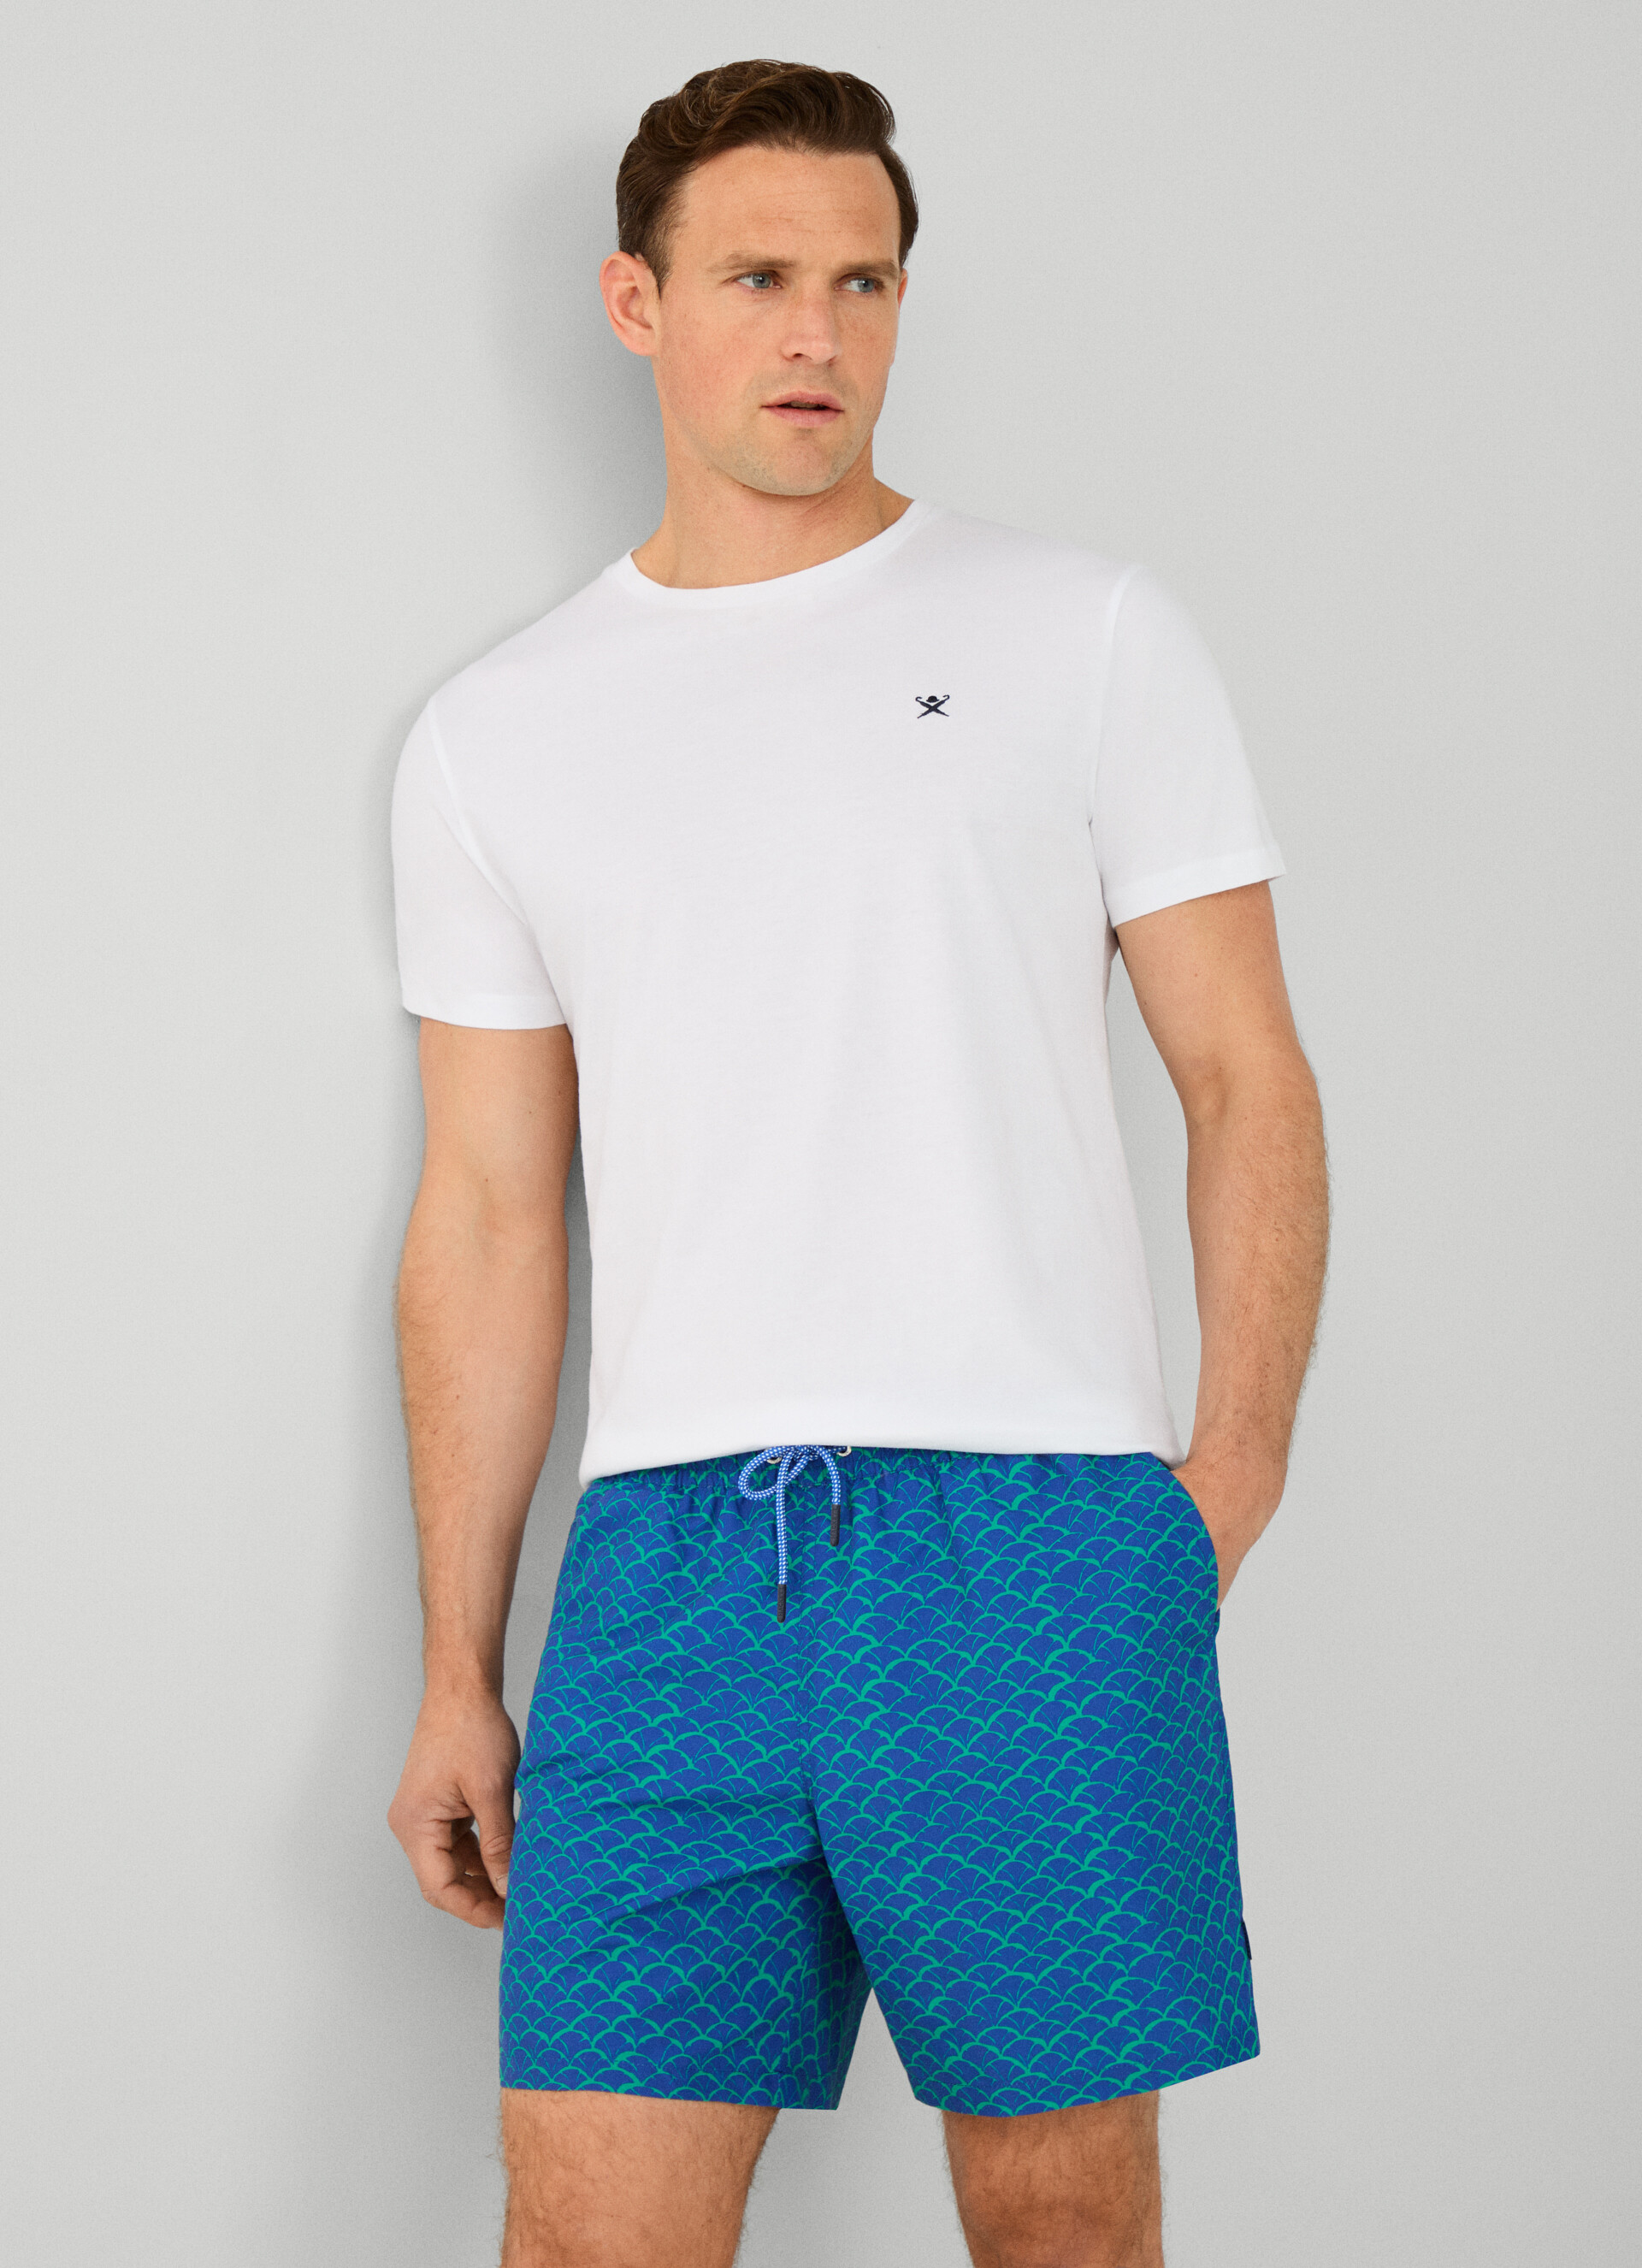 Hackett Short Sleeve Cotton Polo Shirt - Light Grey Marl – OLIAMI